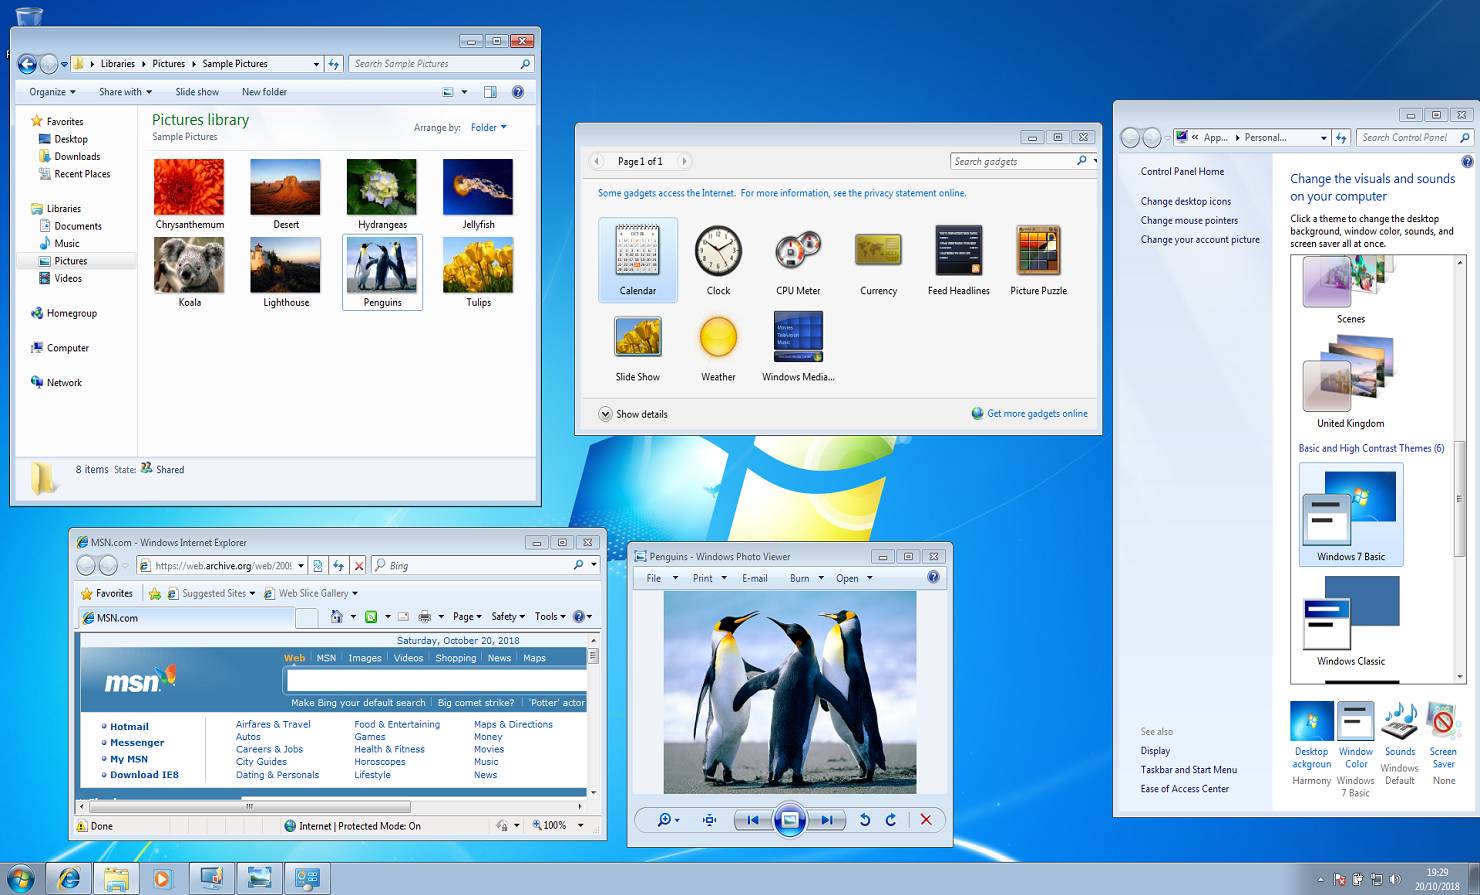 Standardowy motyw systemu Windows 7 (domyślnie włączony w wersji Starter i Home Basic, lub w przypadku braku zgodnej karty graficznej).